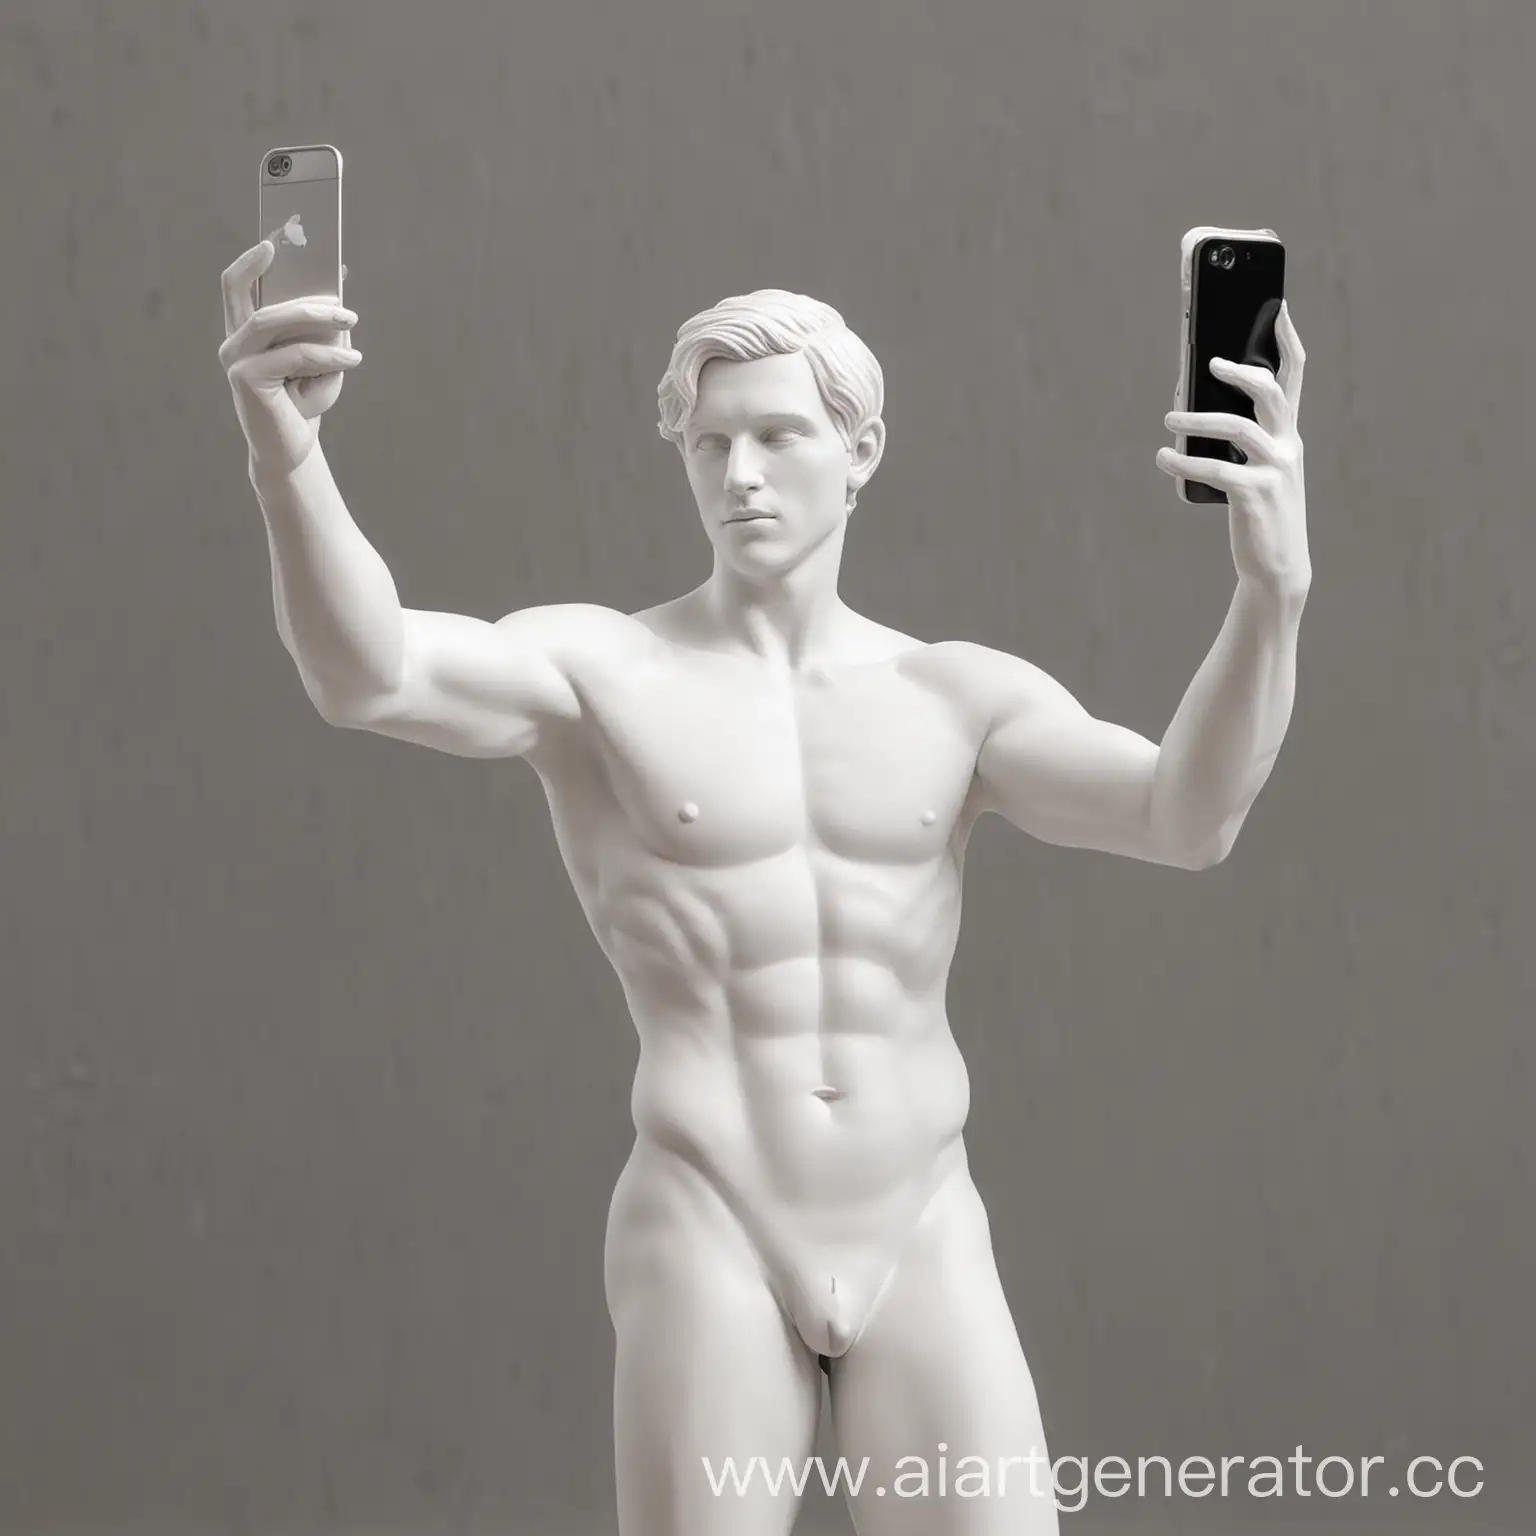 белая скульптура держит смартфон в руке и делает селфи